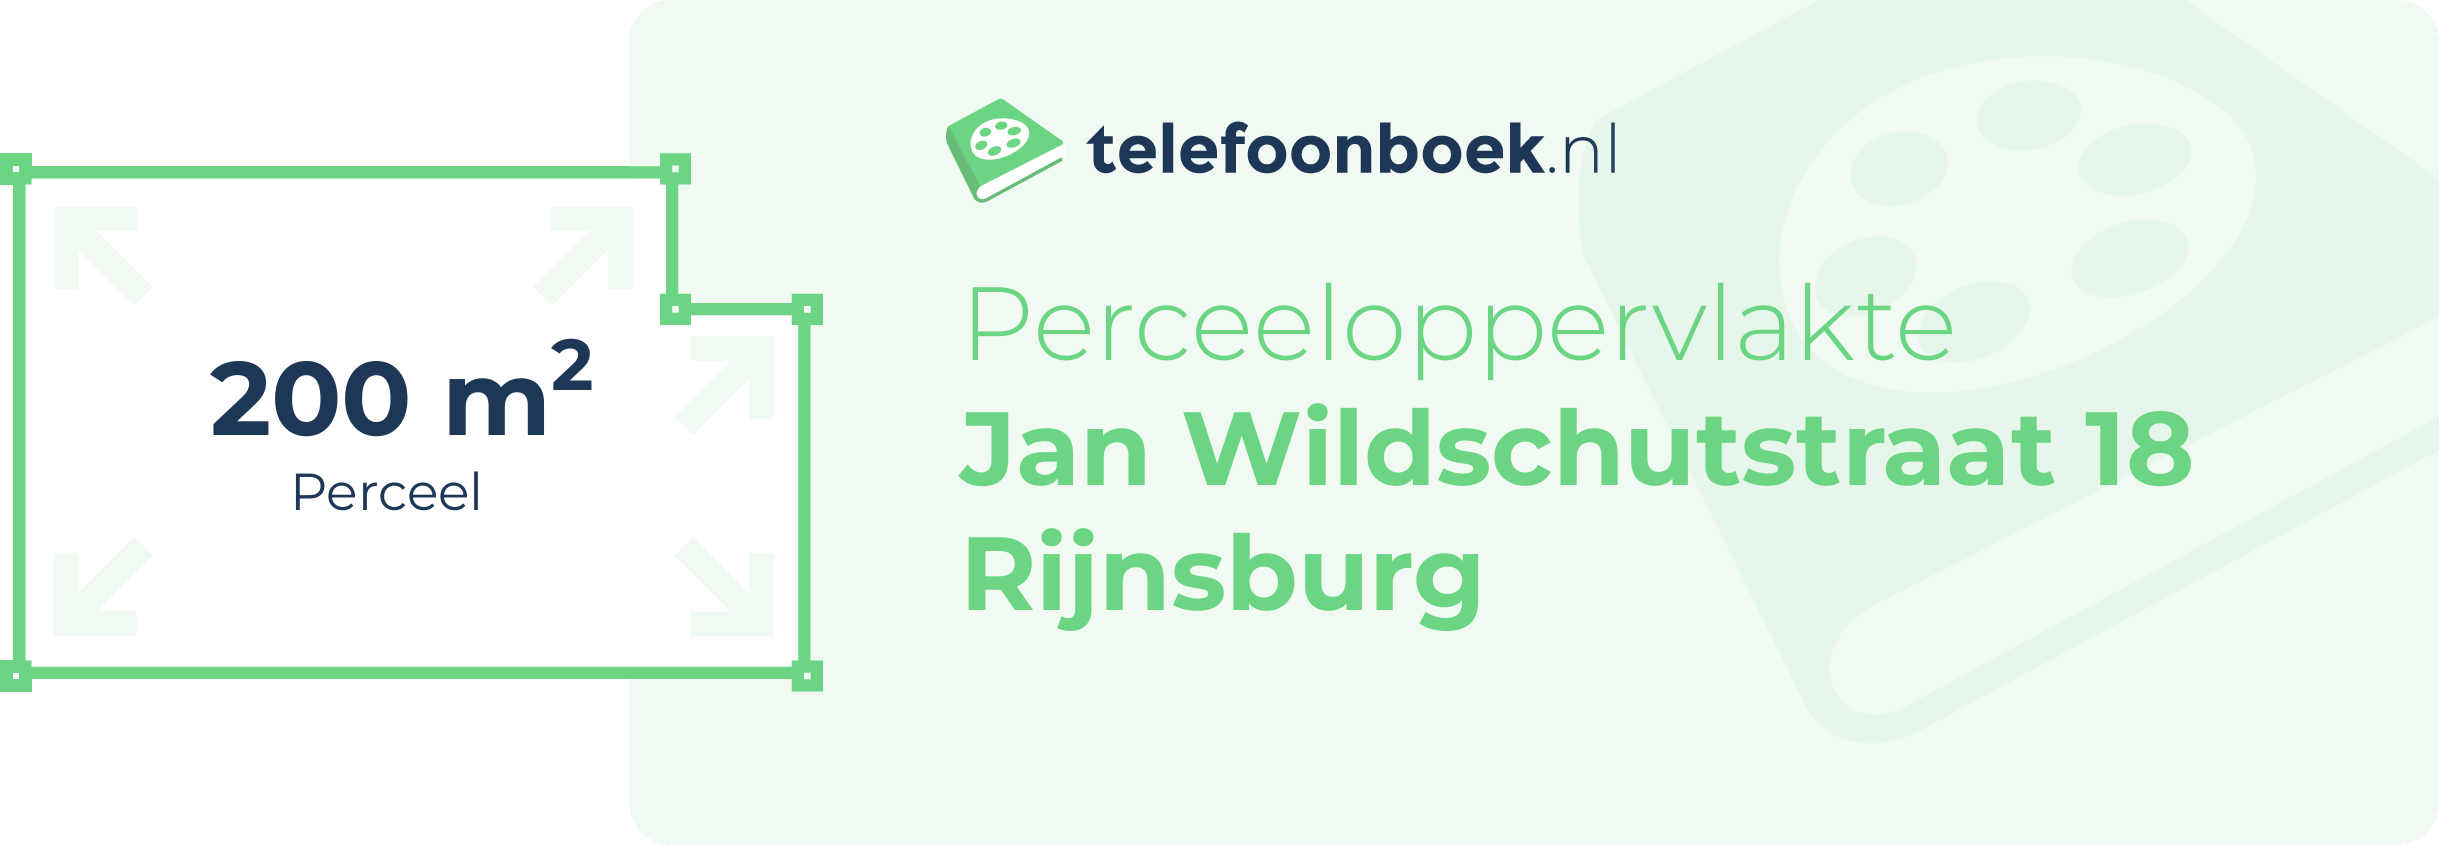 Perceeloppervlakte Jan Wildschutstraat 18 Rijnsburg